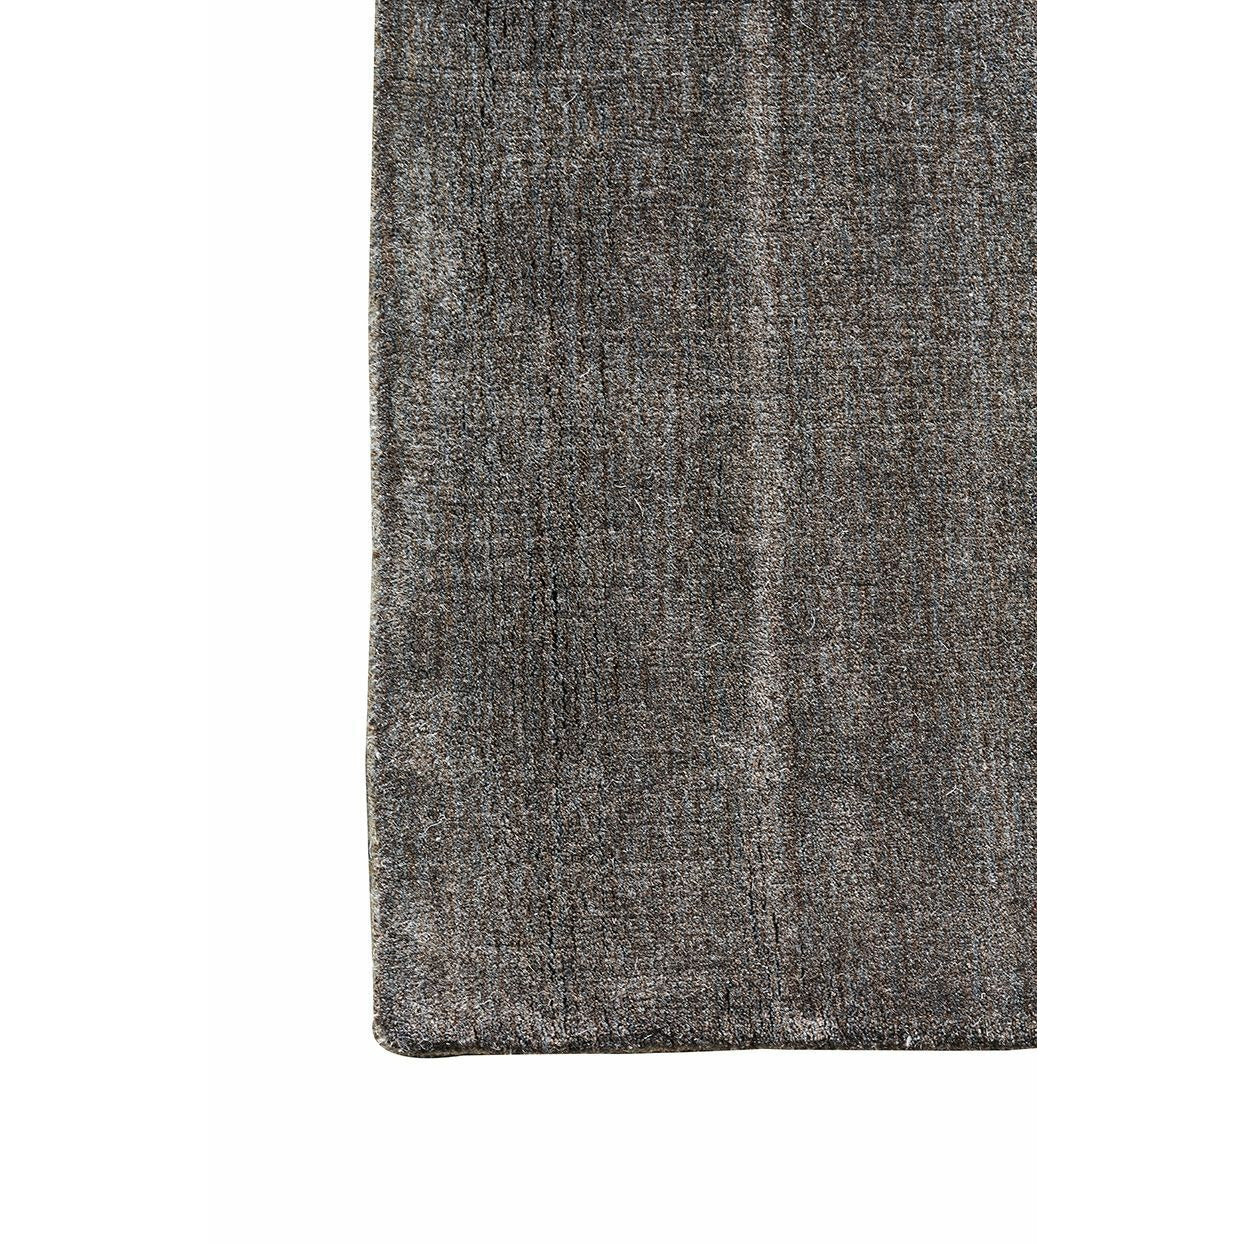 Massimo Maan bambu matto lämmin harmaa, Ø 240 cm